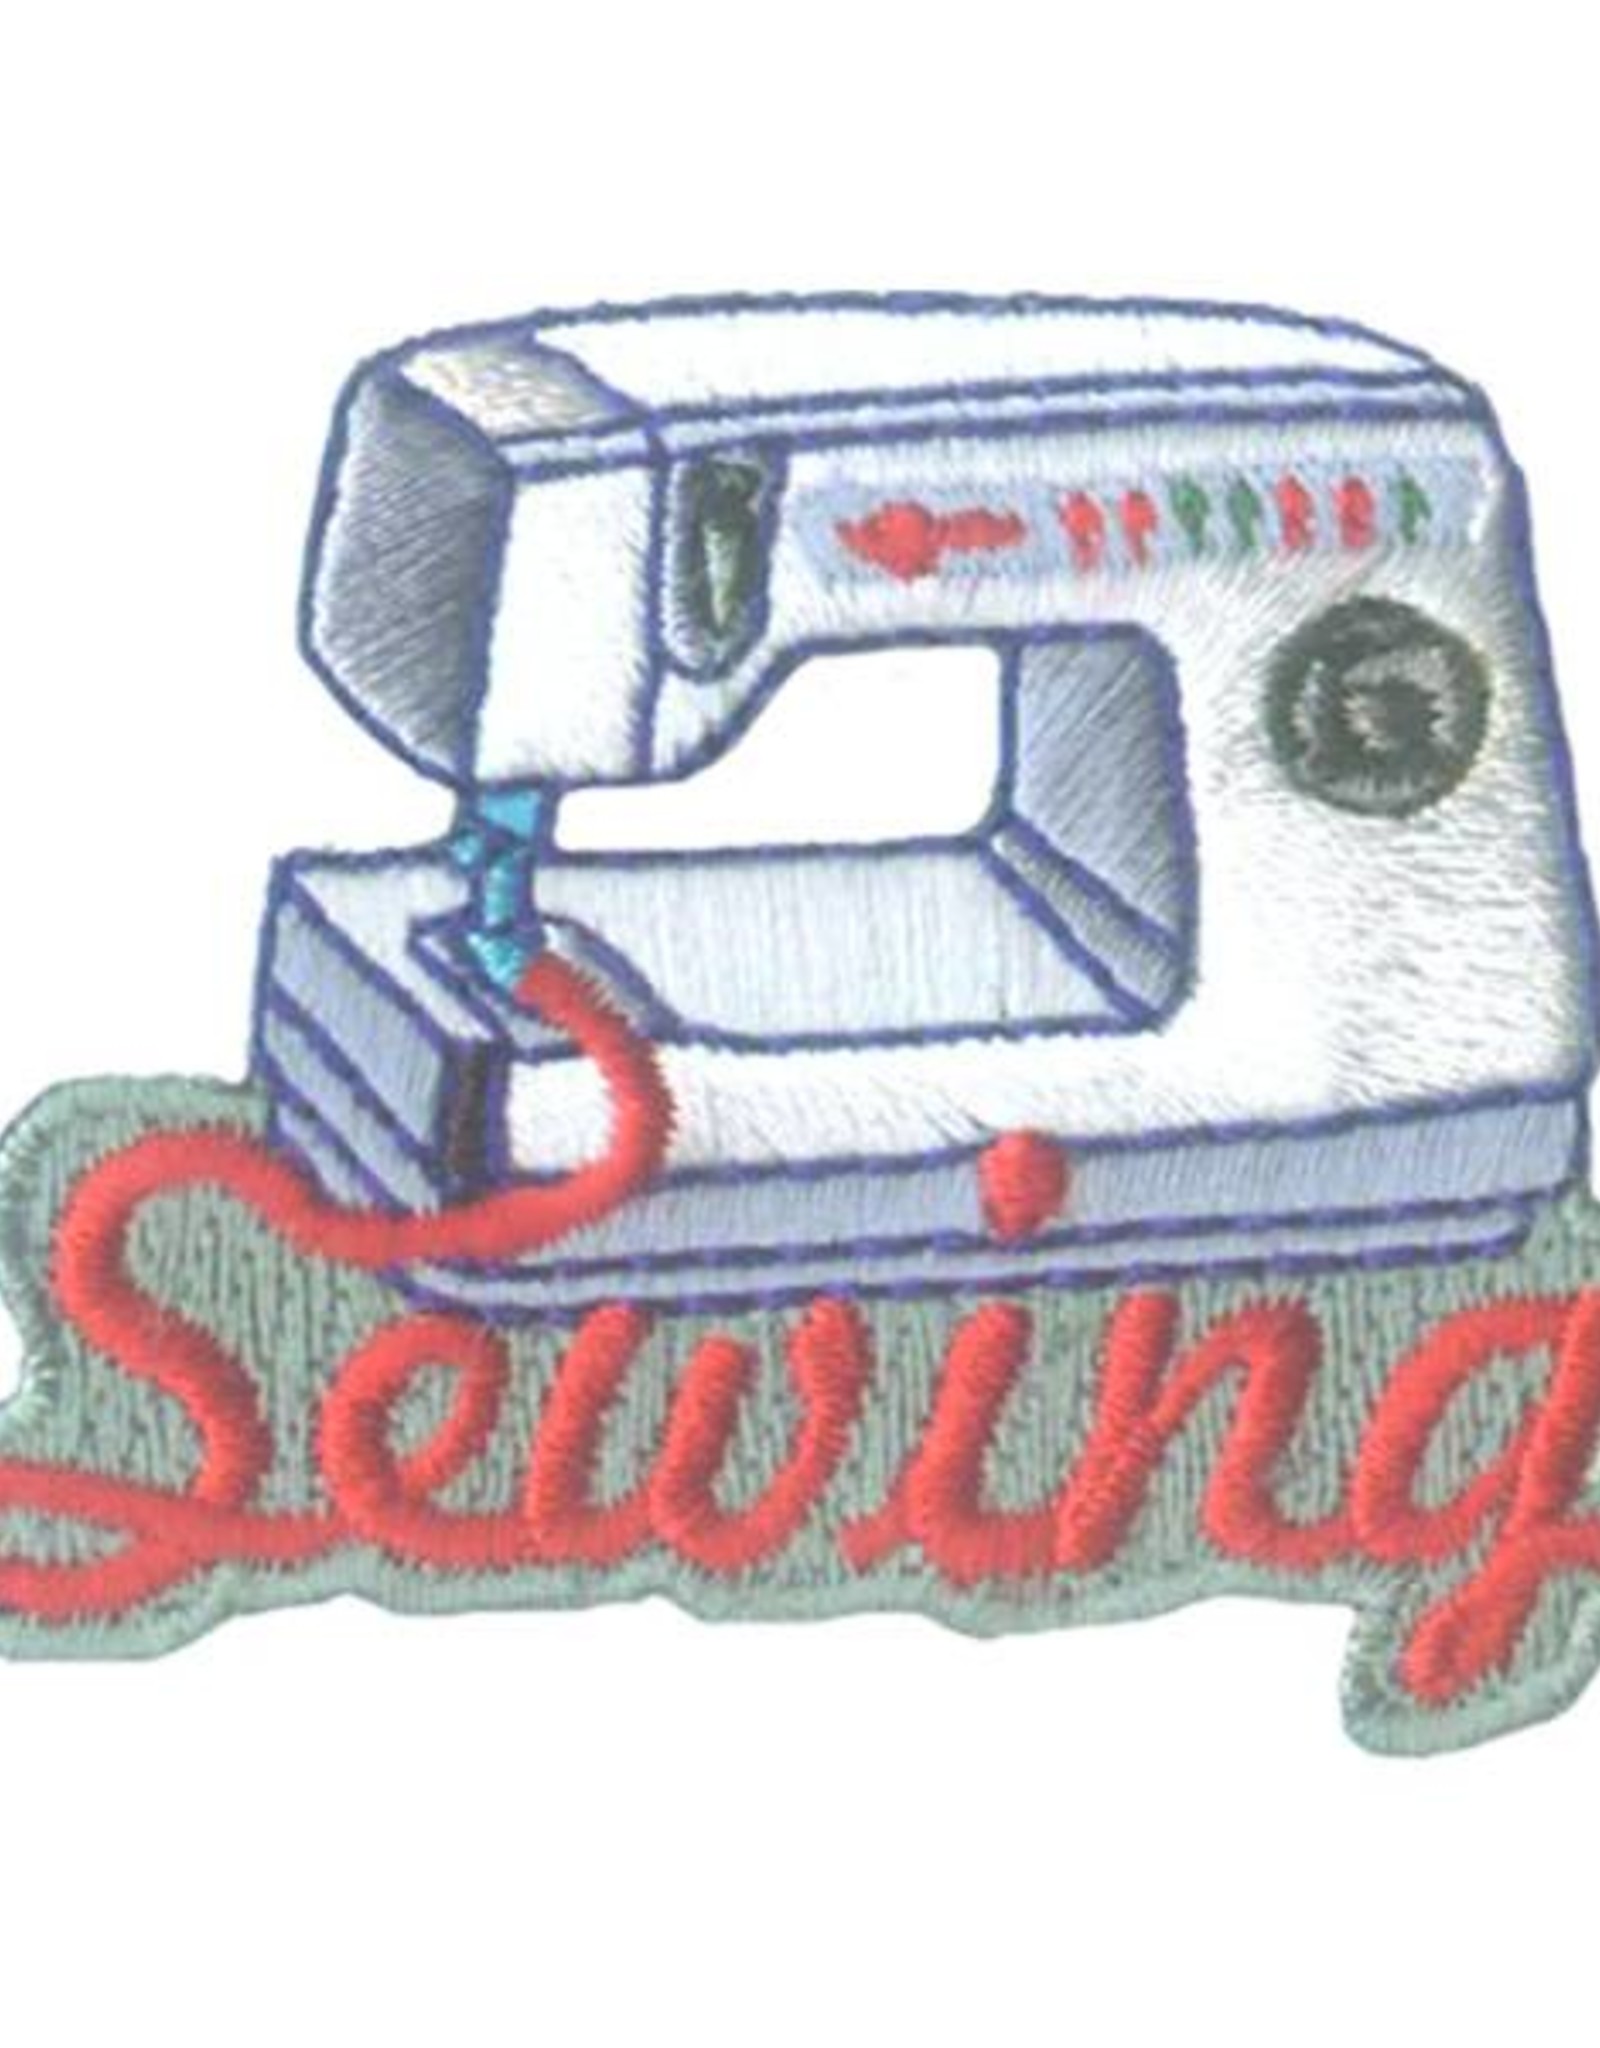 Advantage Emblem & Screen Prnt *Sewing Machine Fun Patch